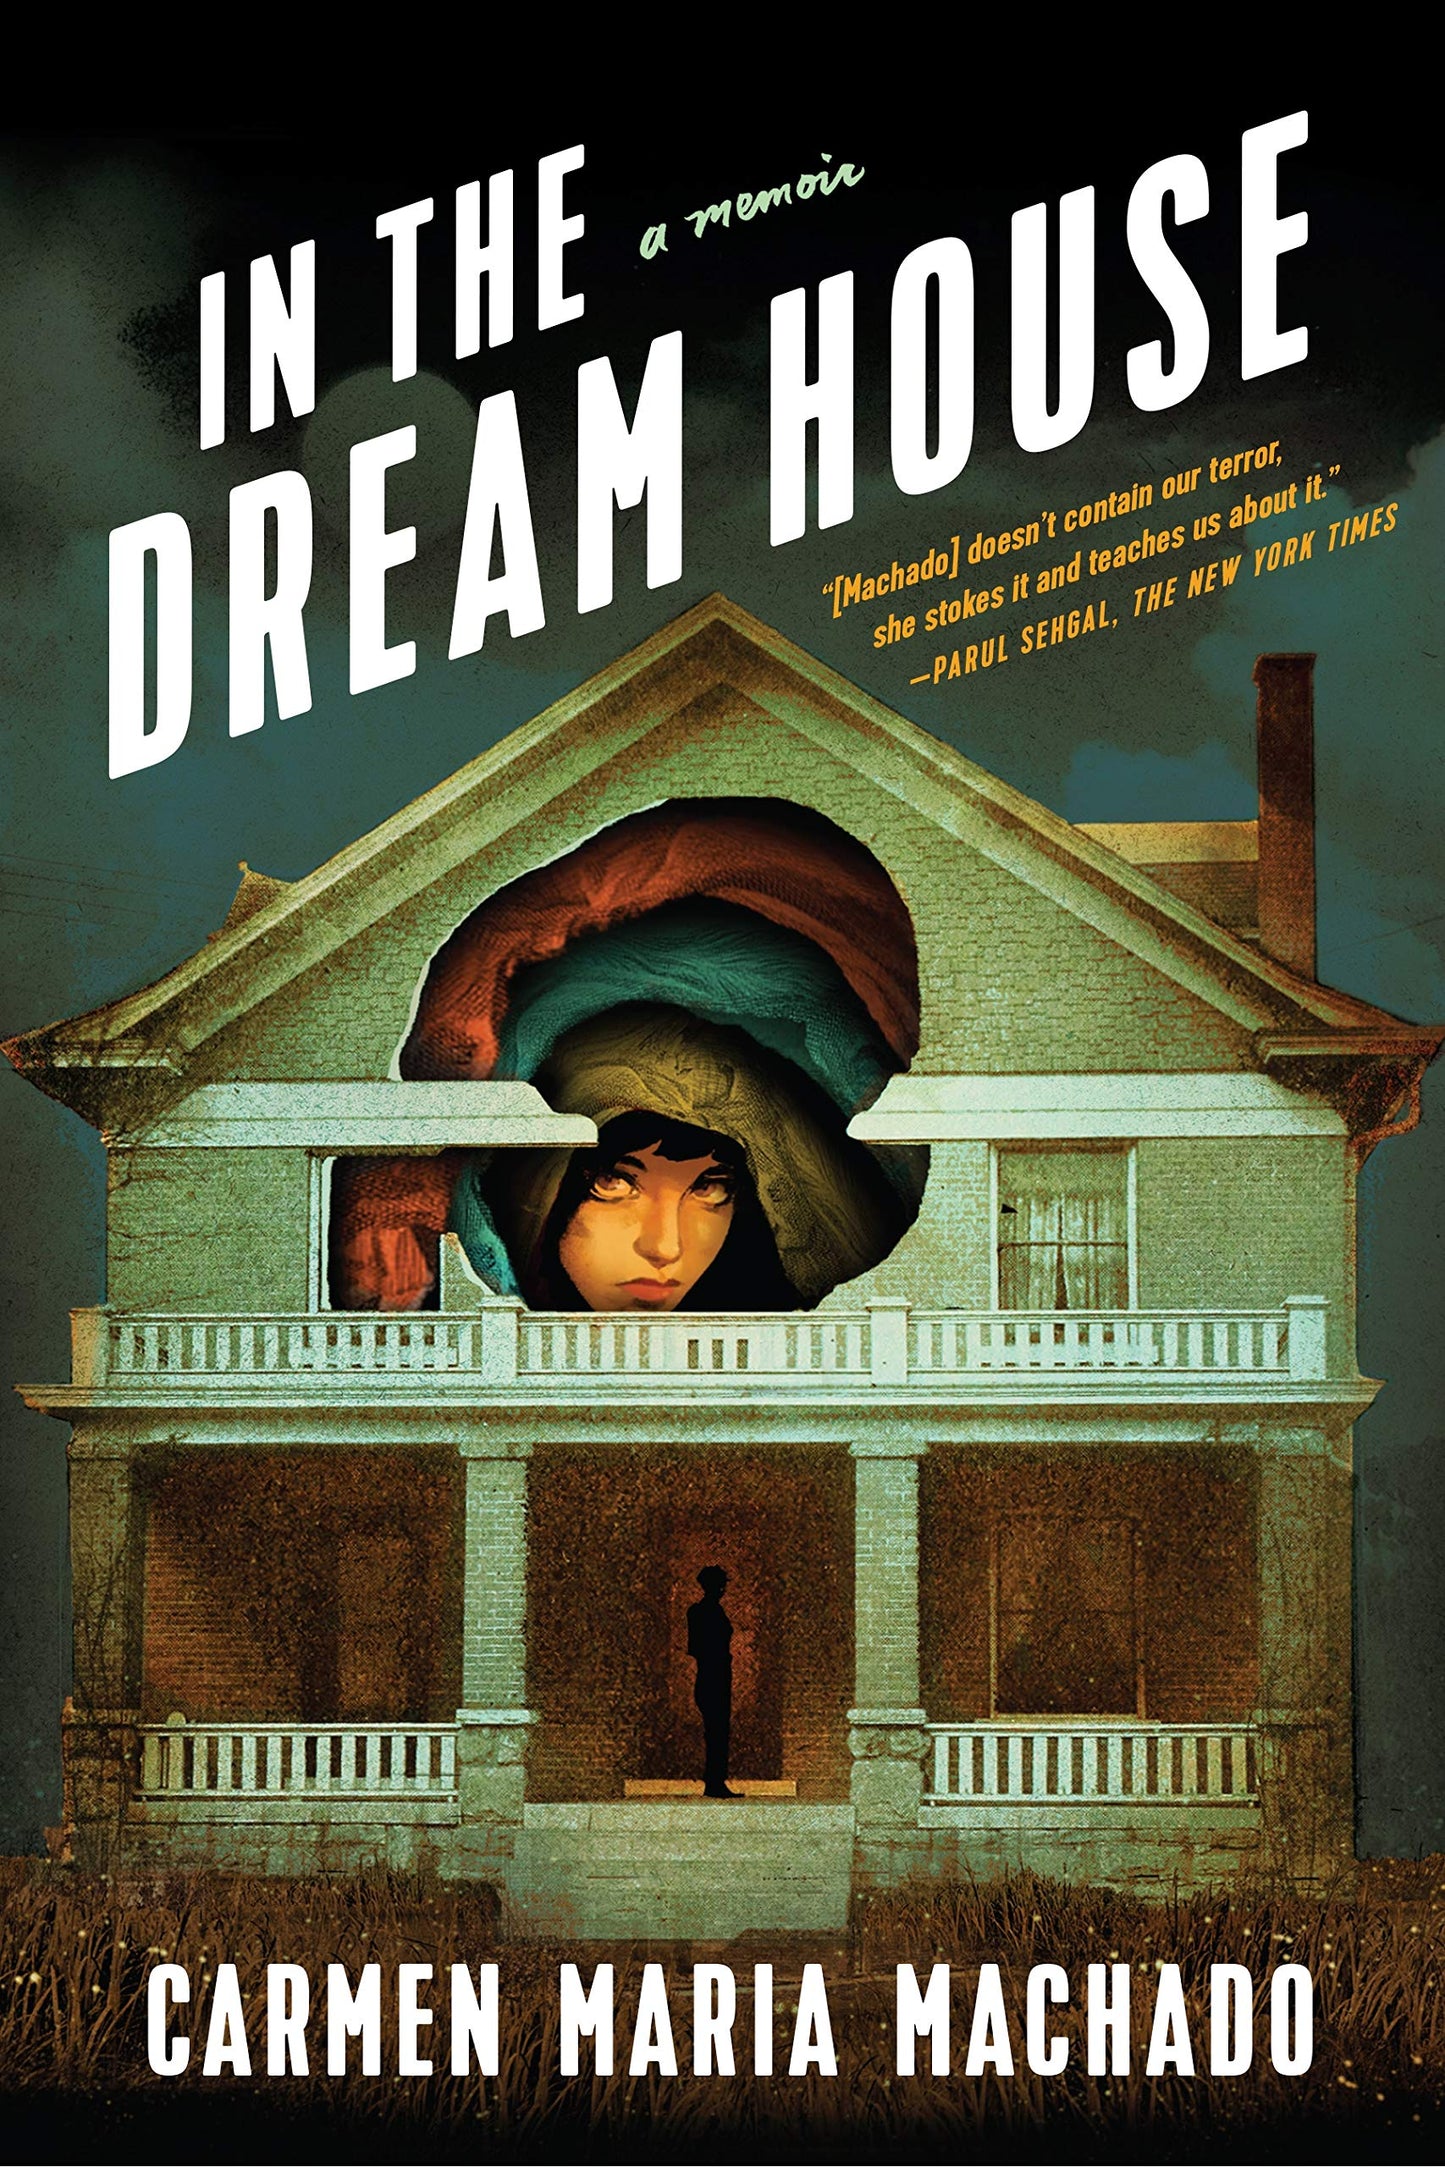 In the Dream House // A Memoir